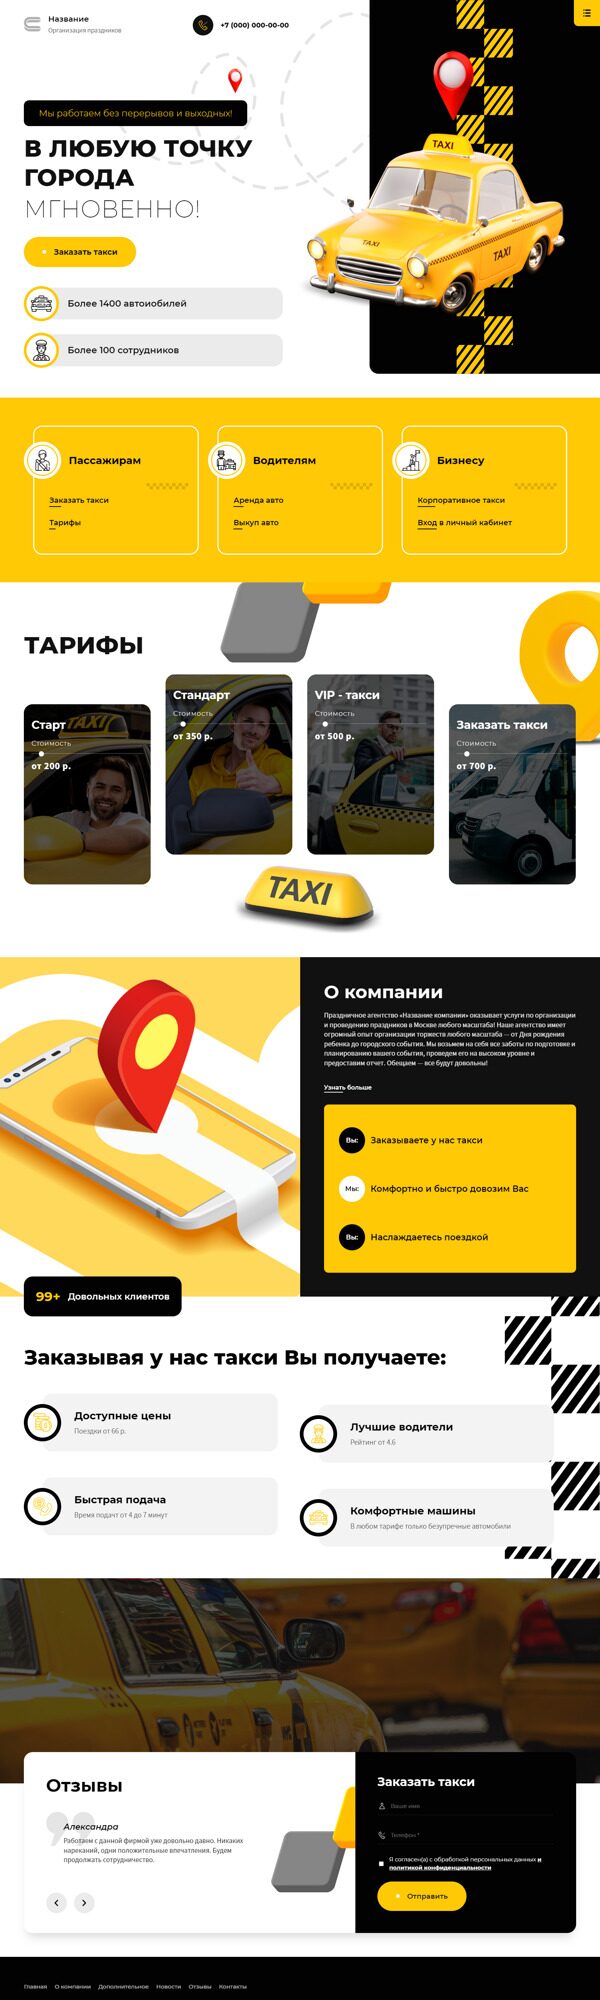 Готовый Сайт-Бизнес № 4545745 - Такси, пассажирские перевозки (Десктопная версия)